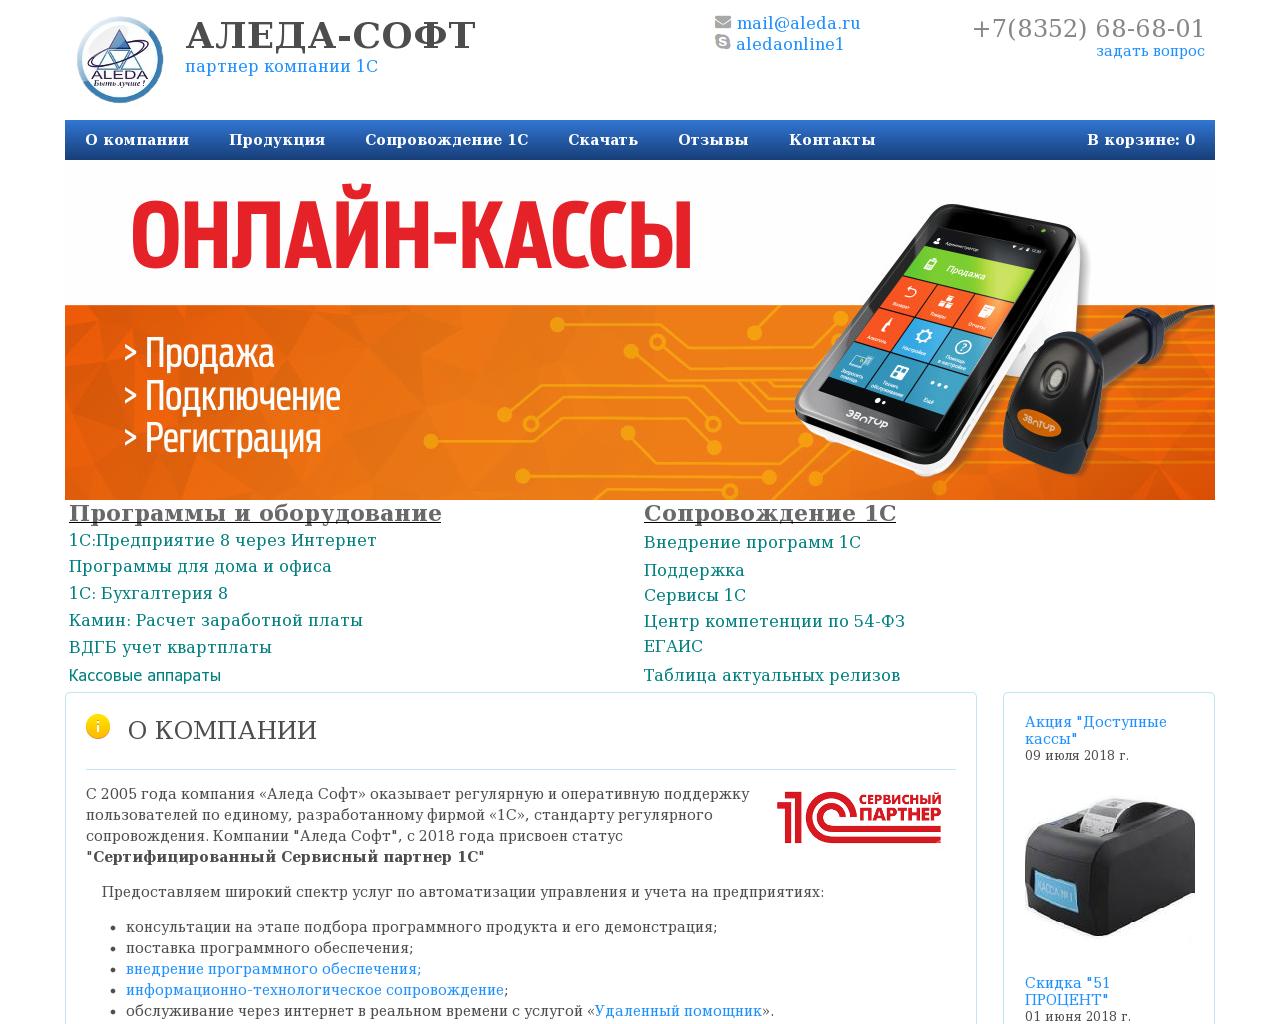 Изображение сайта aleda.ru в разрешении 1280x1024